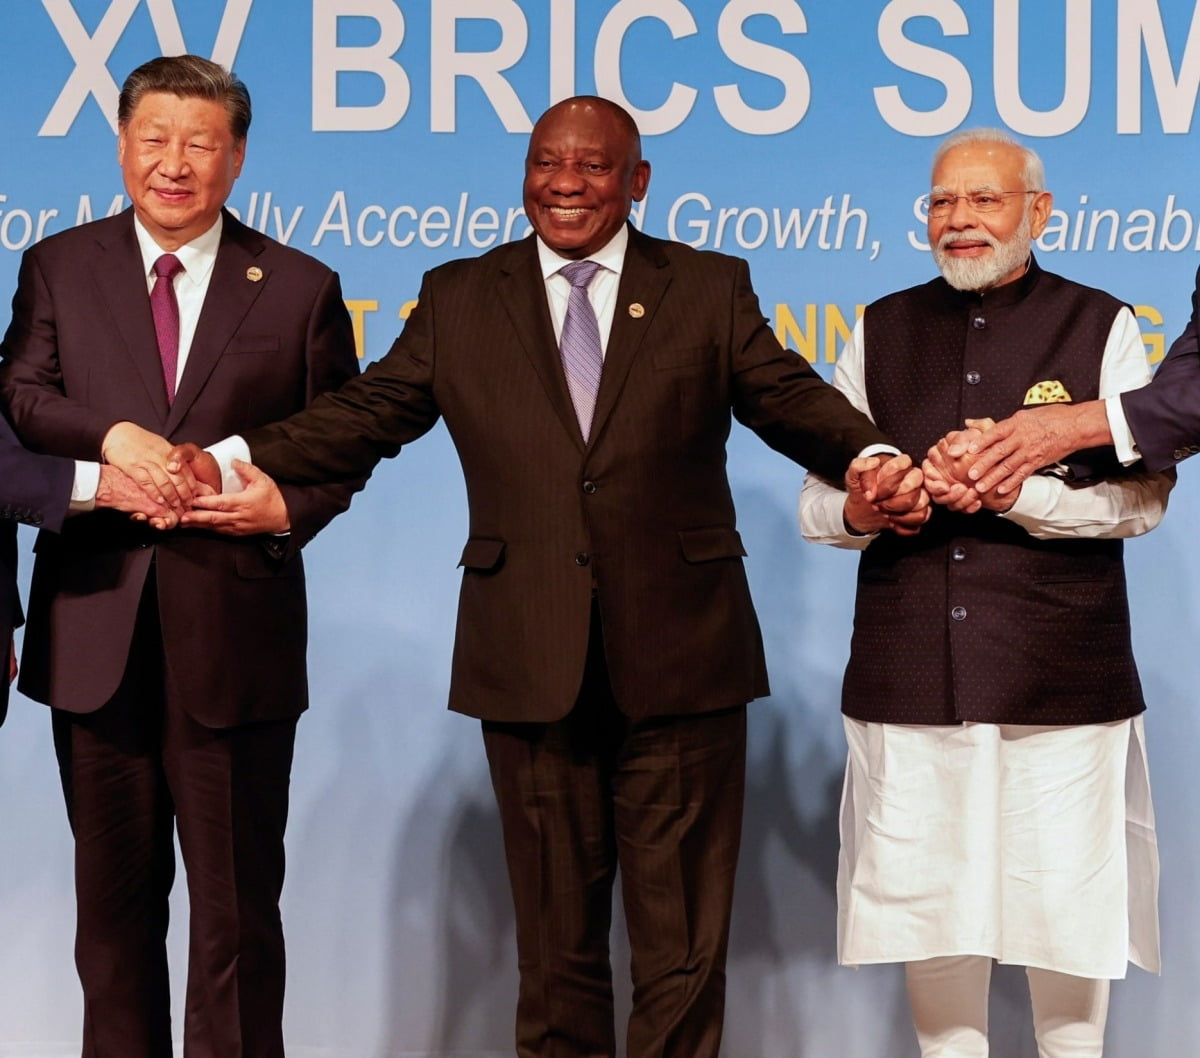 시진핑 중국 국가주석(왼쪽)과 나렌드라 모디 인도 총리(오른쪽)이 지난 8월 남아프리카공화국 요하네스버그에서 열린 브릭스 정상회의에서 시릴 라마포사 남아공 대통령과 함께 손잡고 있다.  /AFP